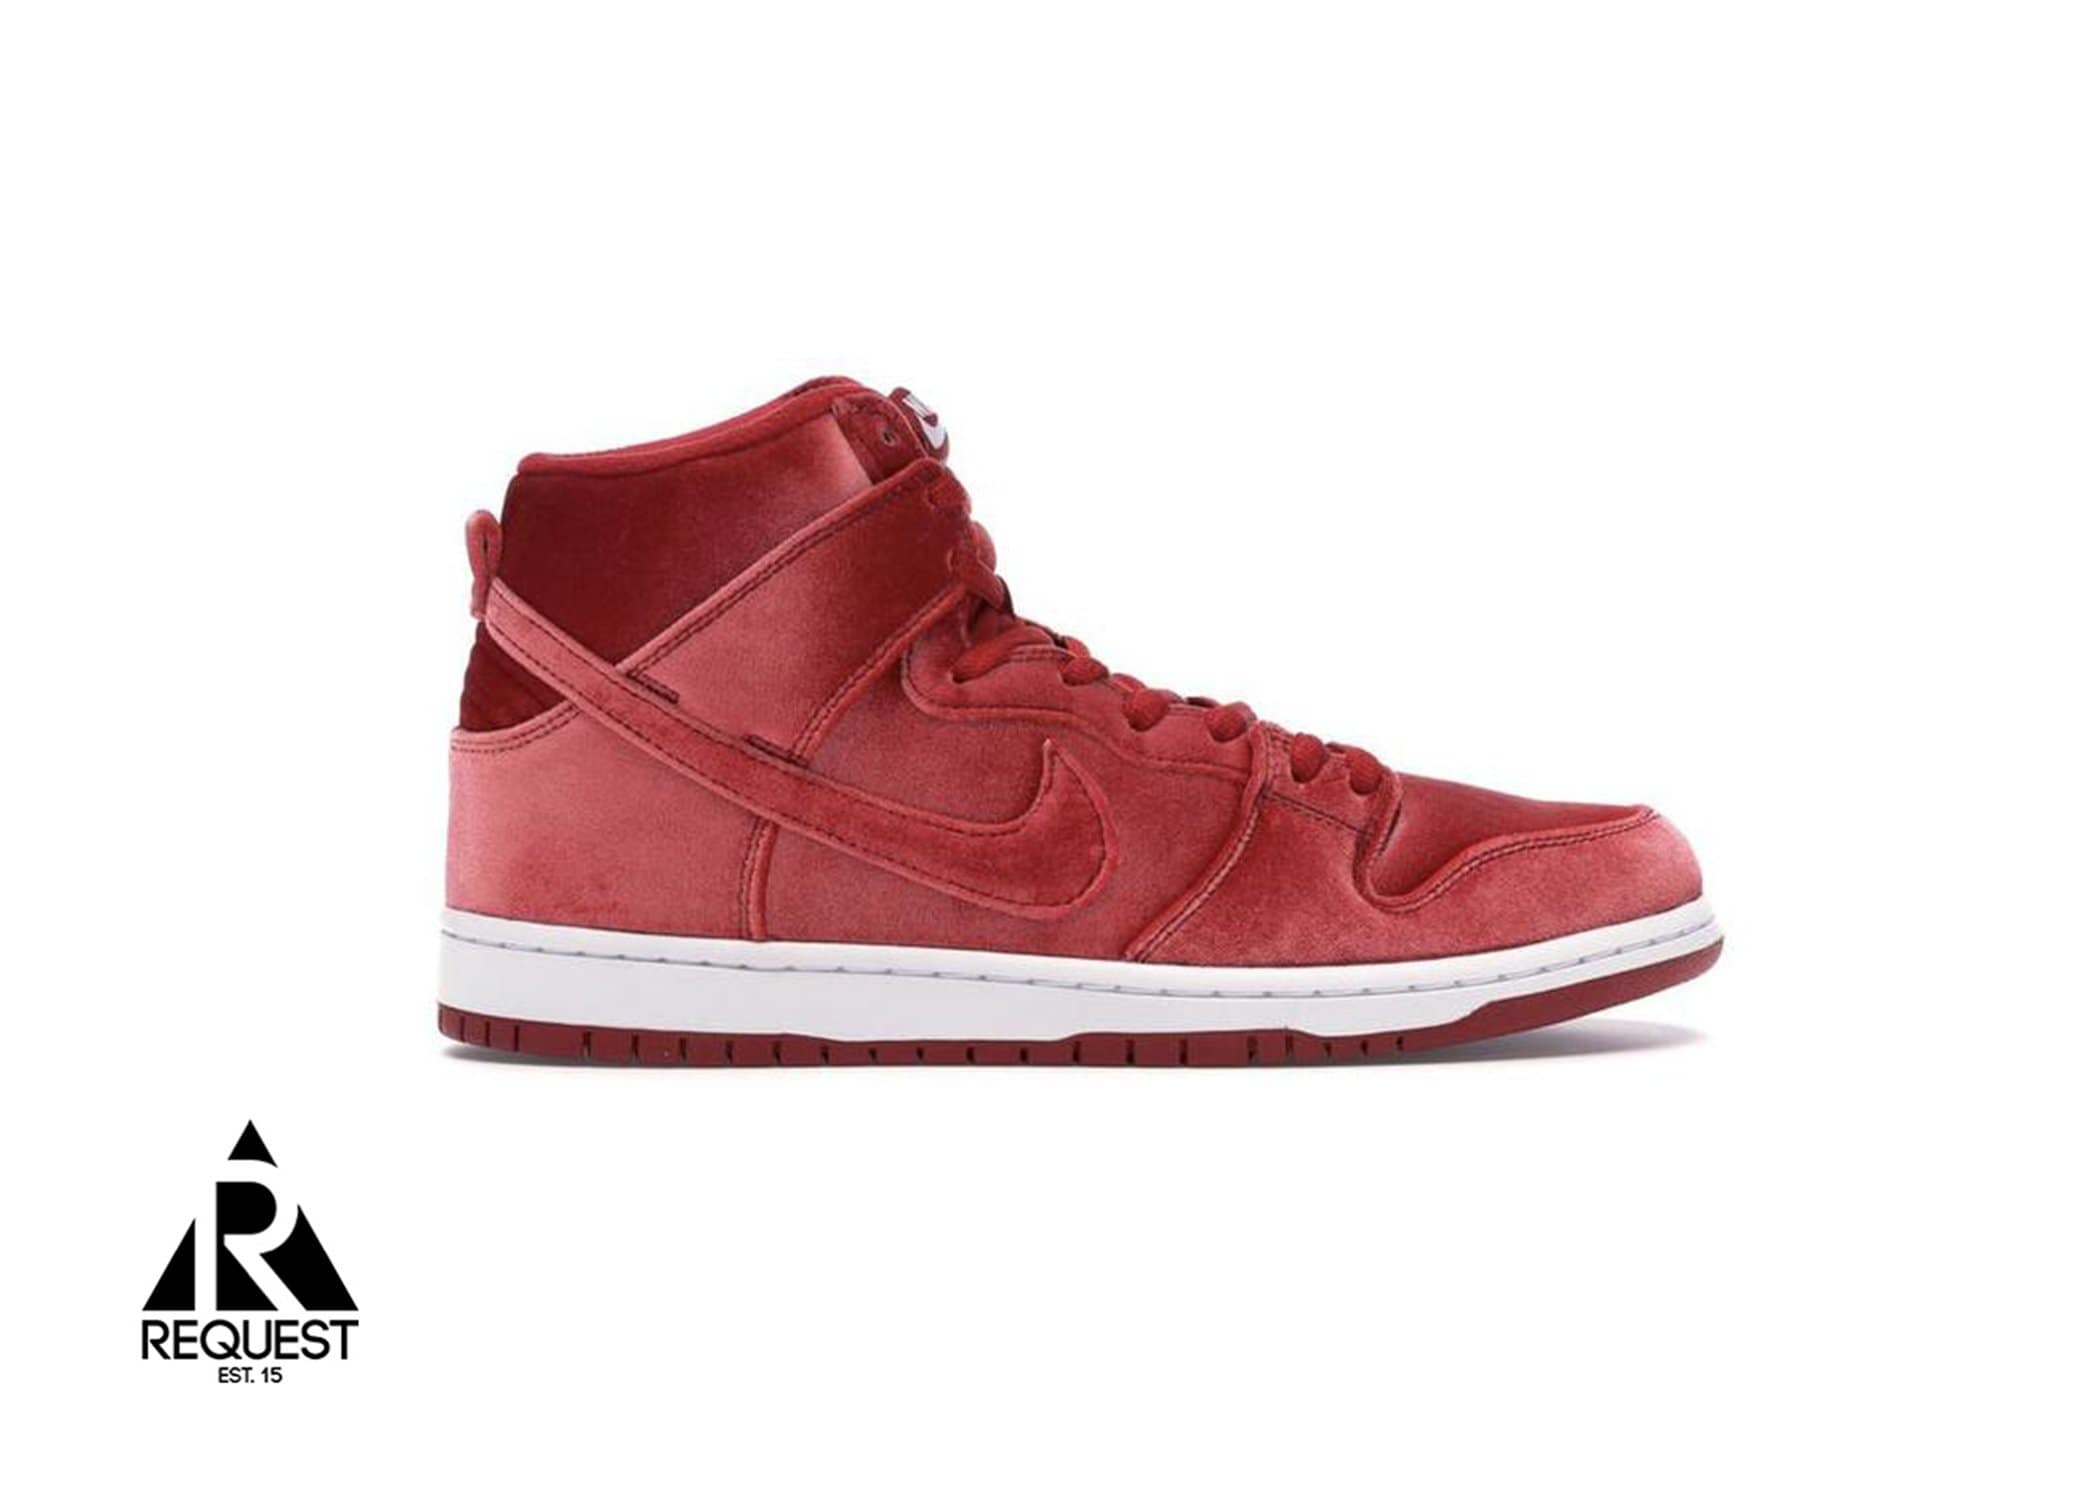 Nike SB Dunk High “Red Velvet”